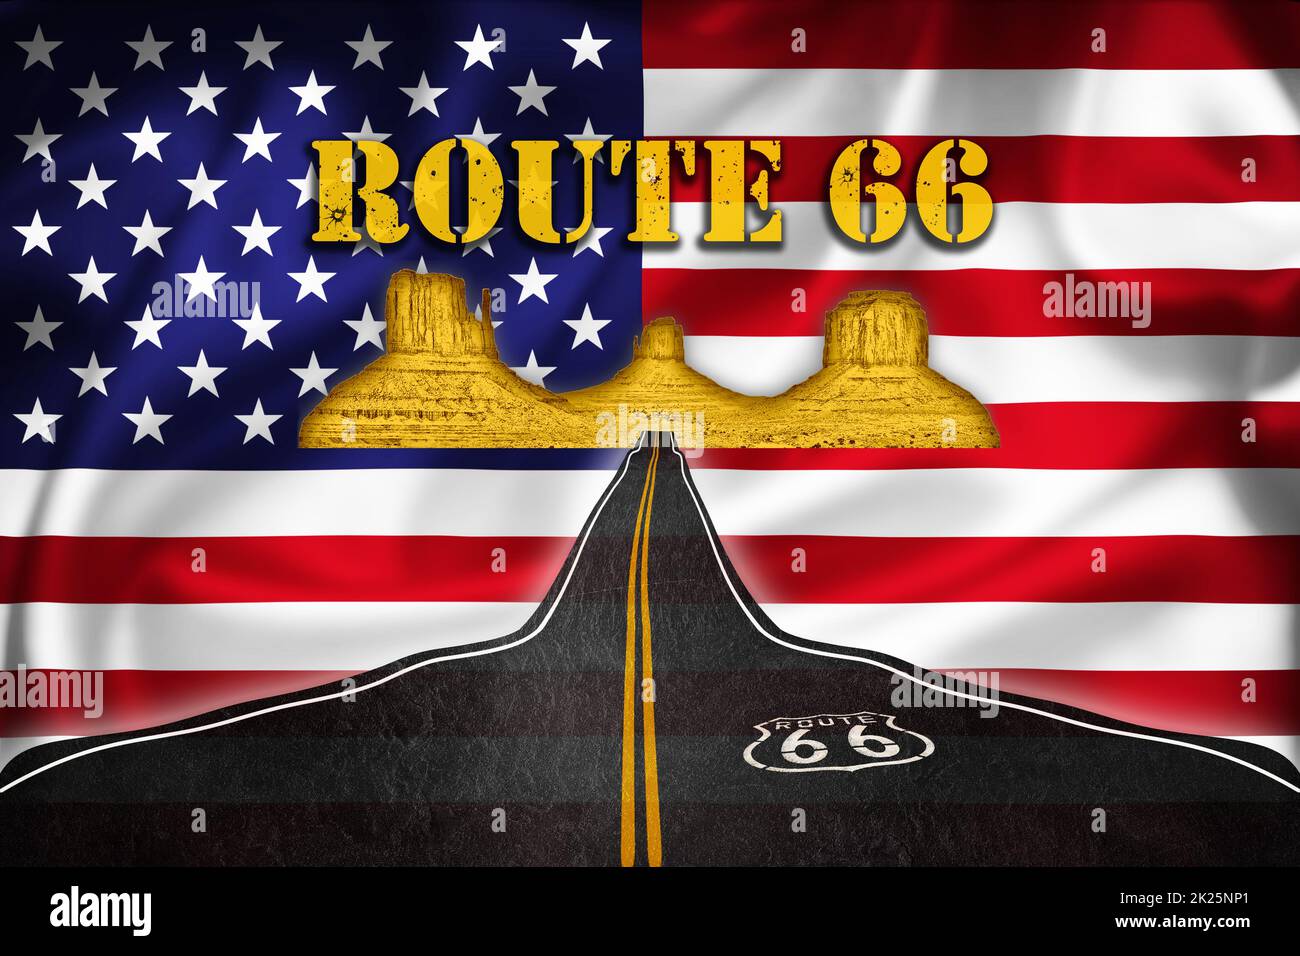 Illustration de la bannière historique de la route 66 sur le drapeau américain Banque D'Images